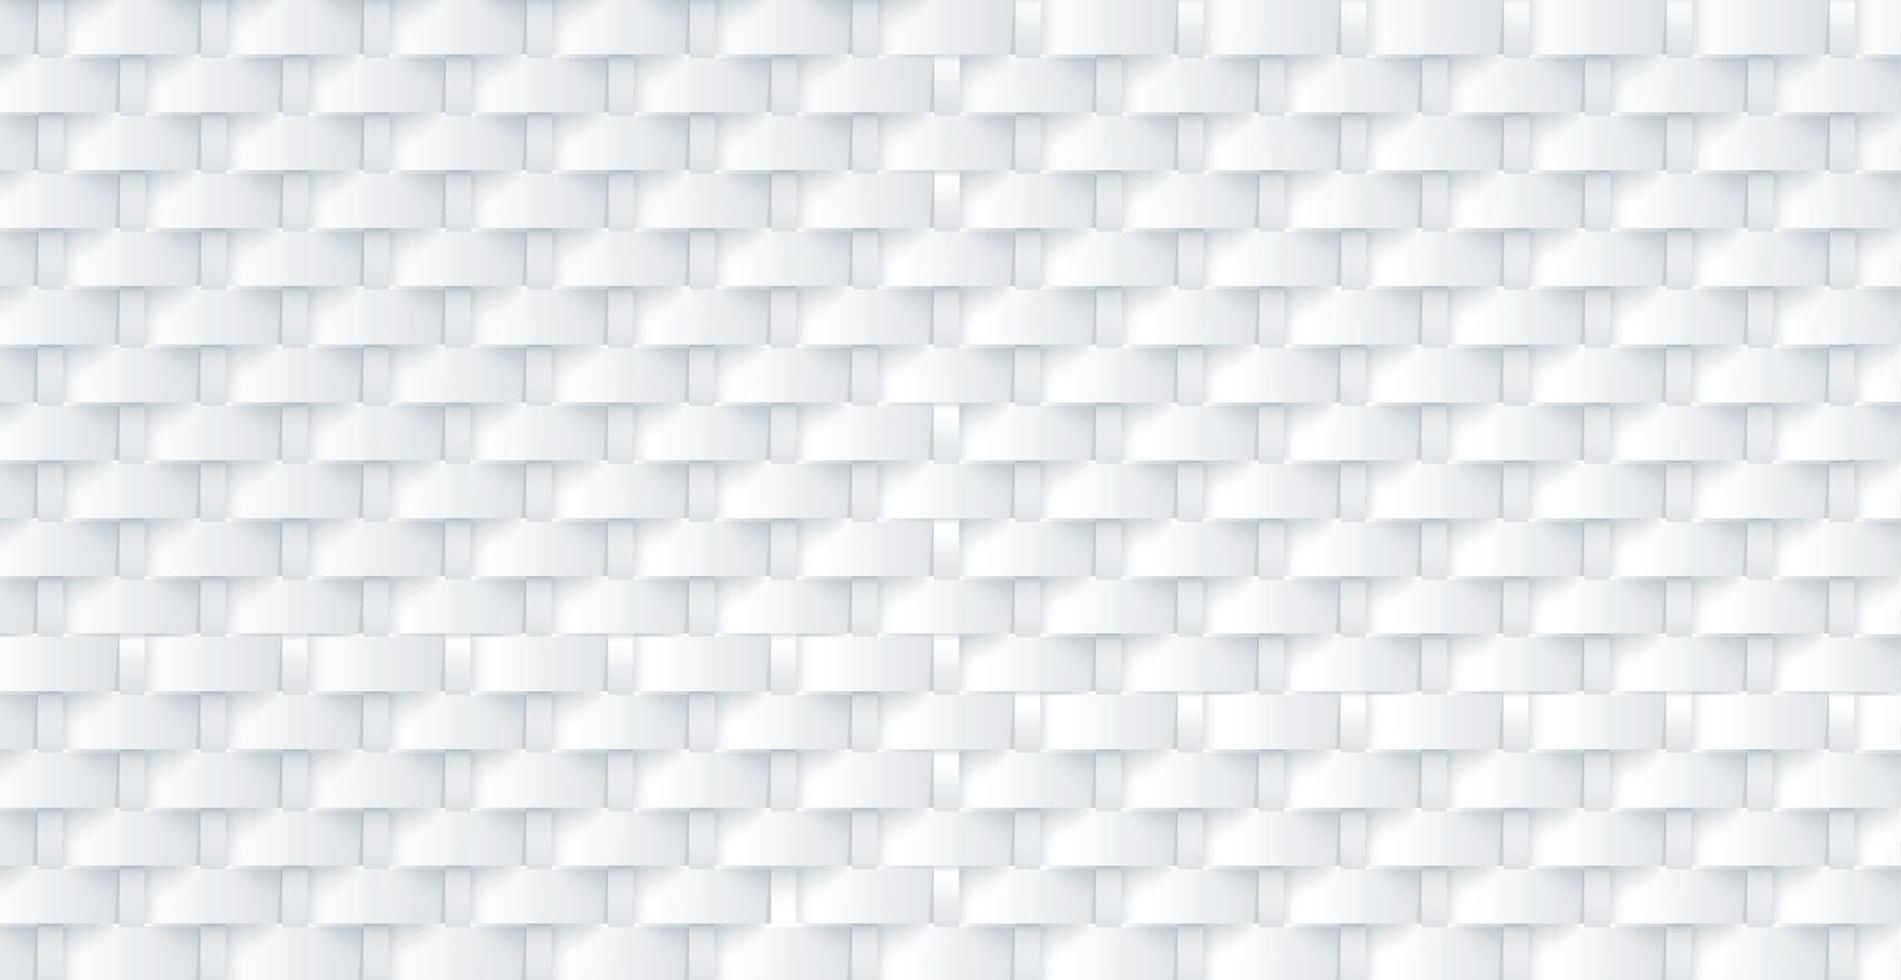 abstrakter Hintergrund weiß - graue Rechtecke, Platz für Werbetext - Vektor